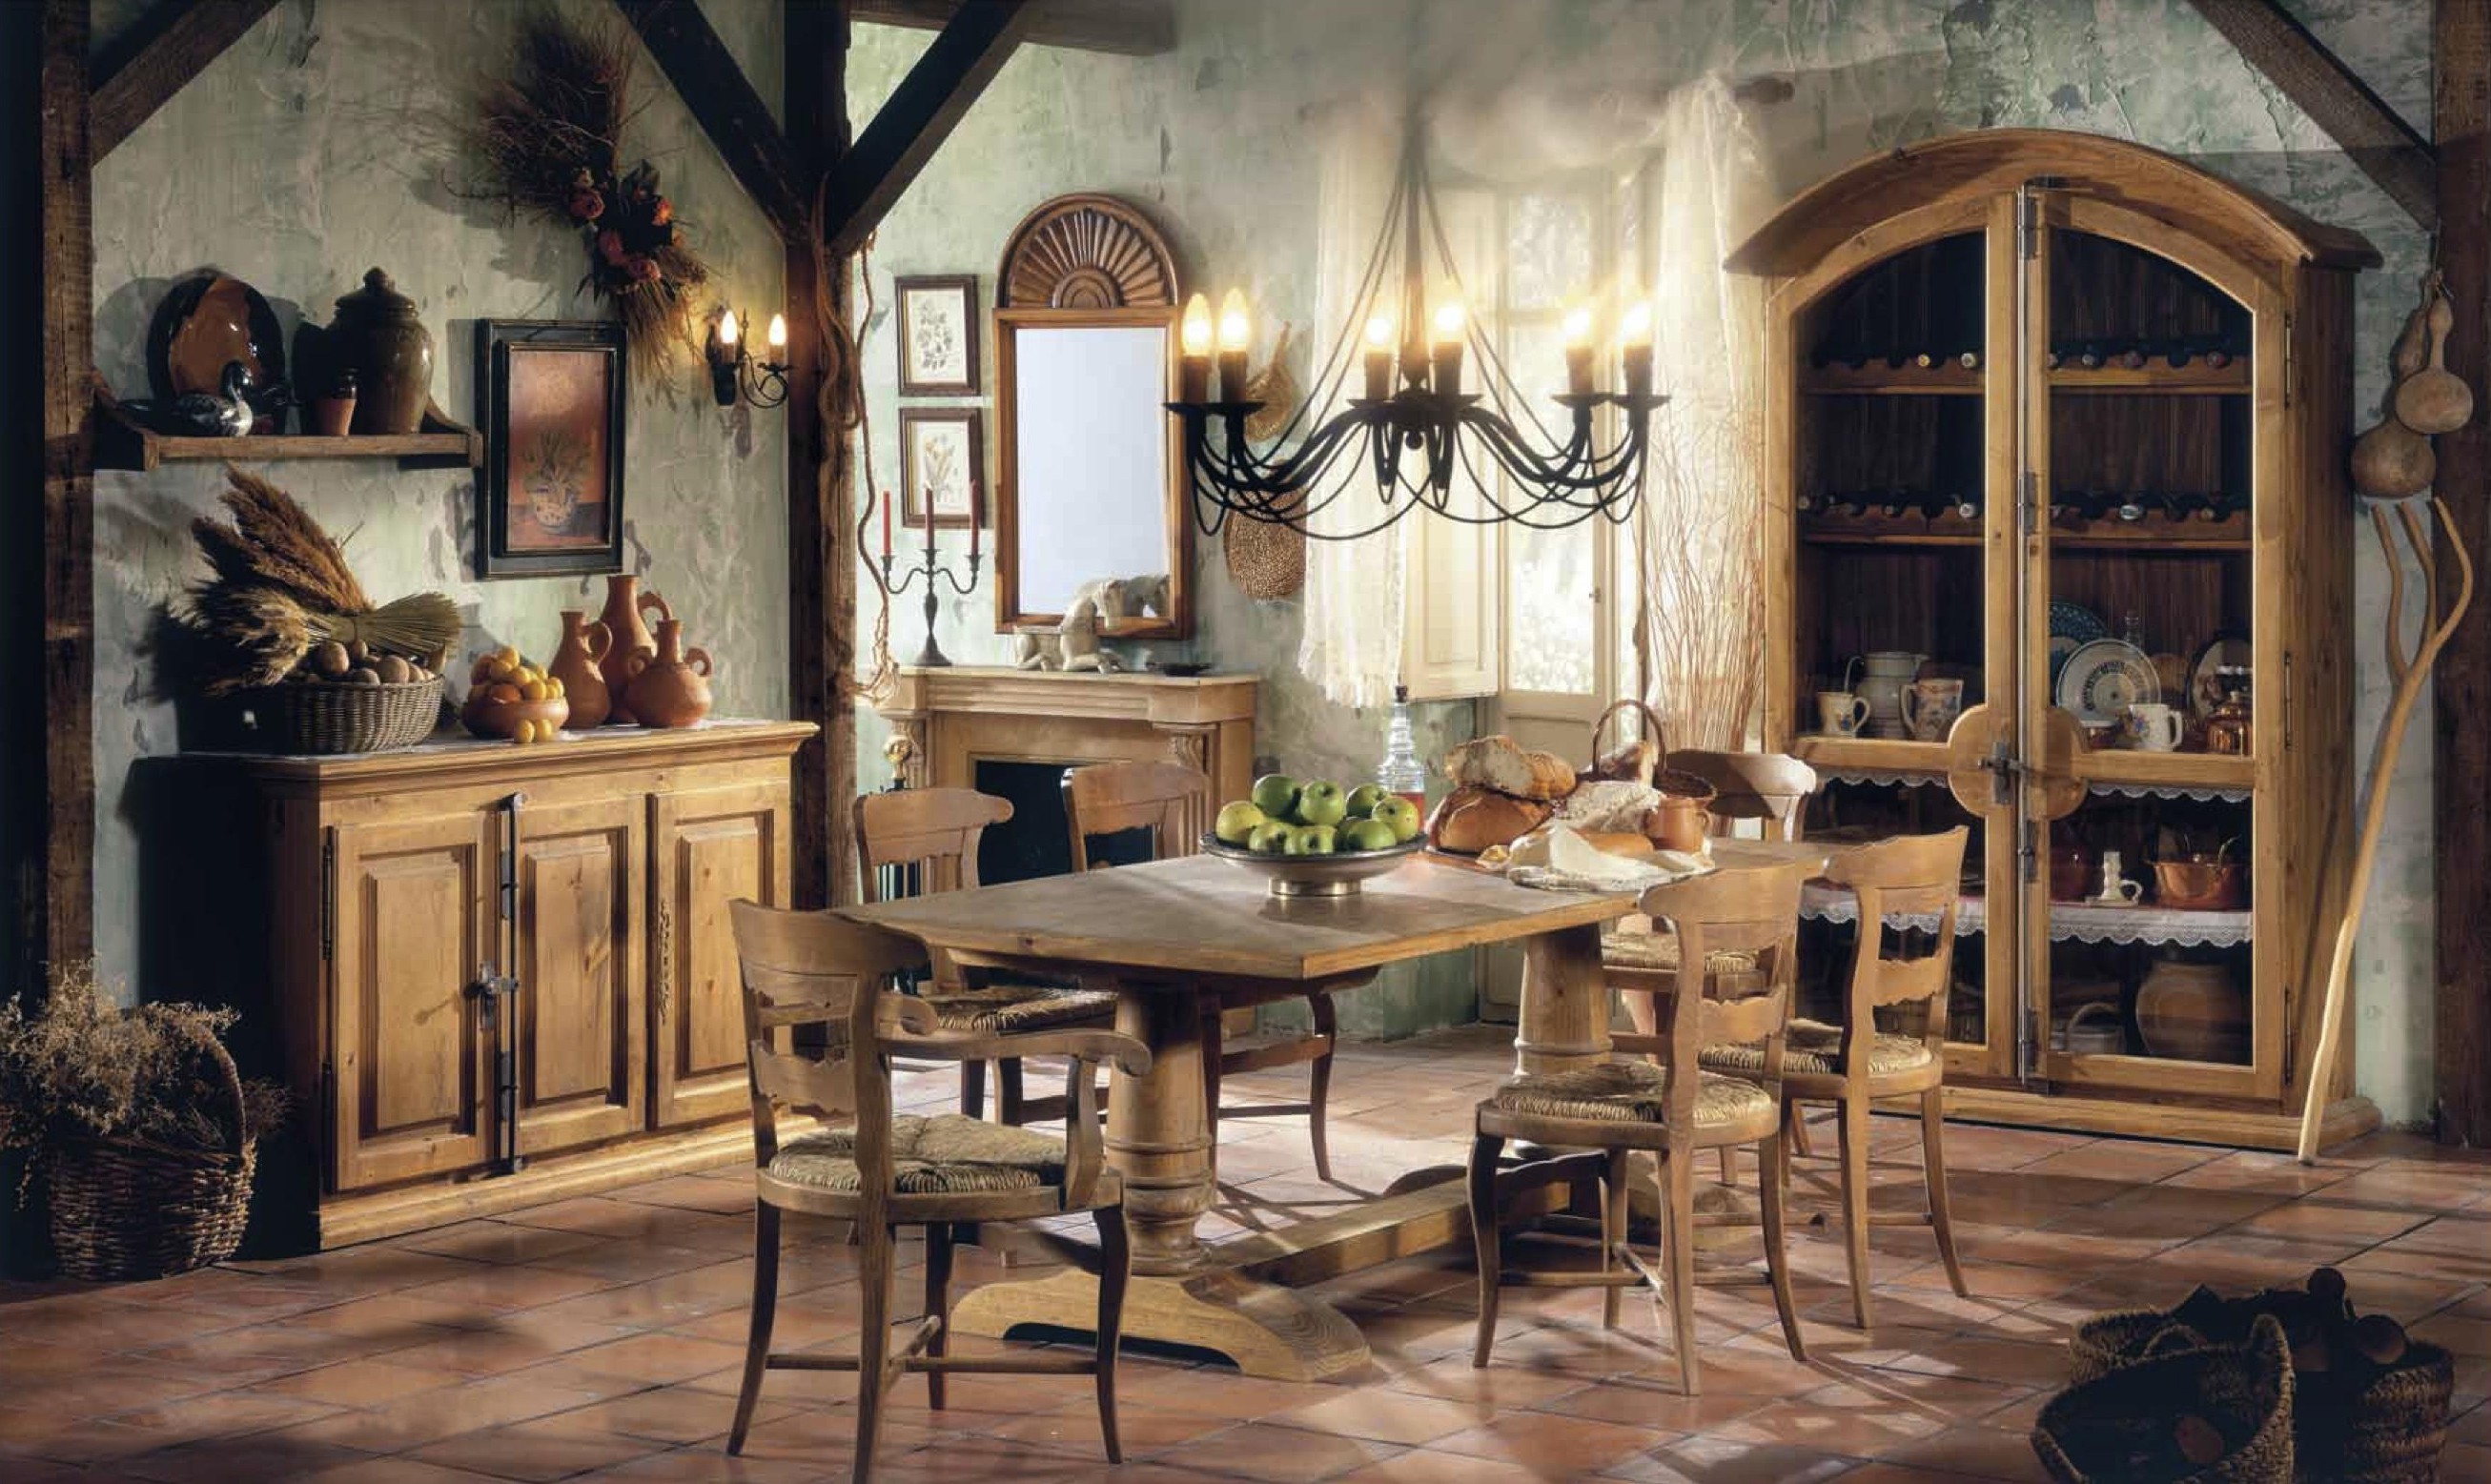 Luxusní rustikální jídelna ve venkovském stylu v přírodním dřevěném provedení